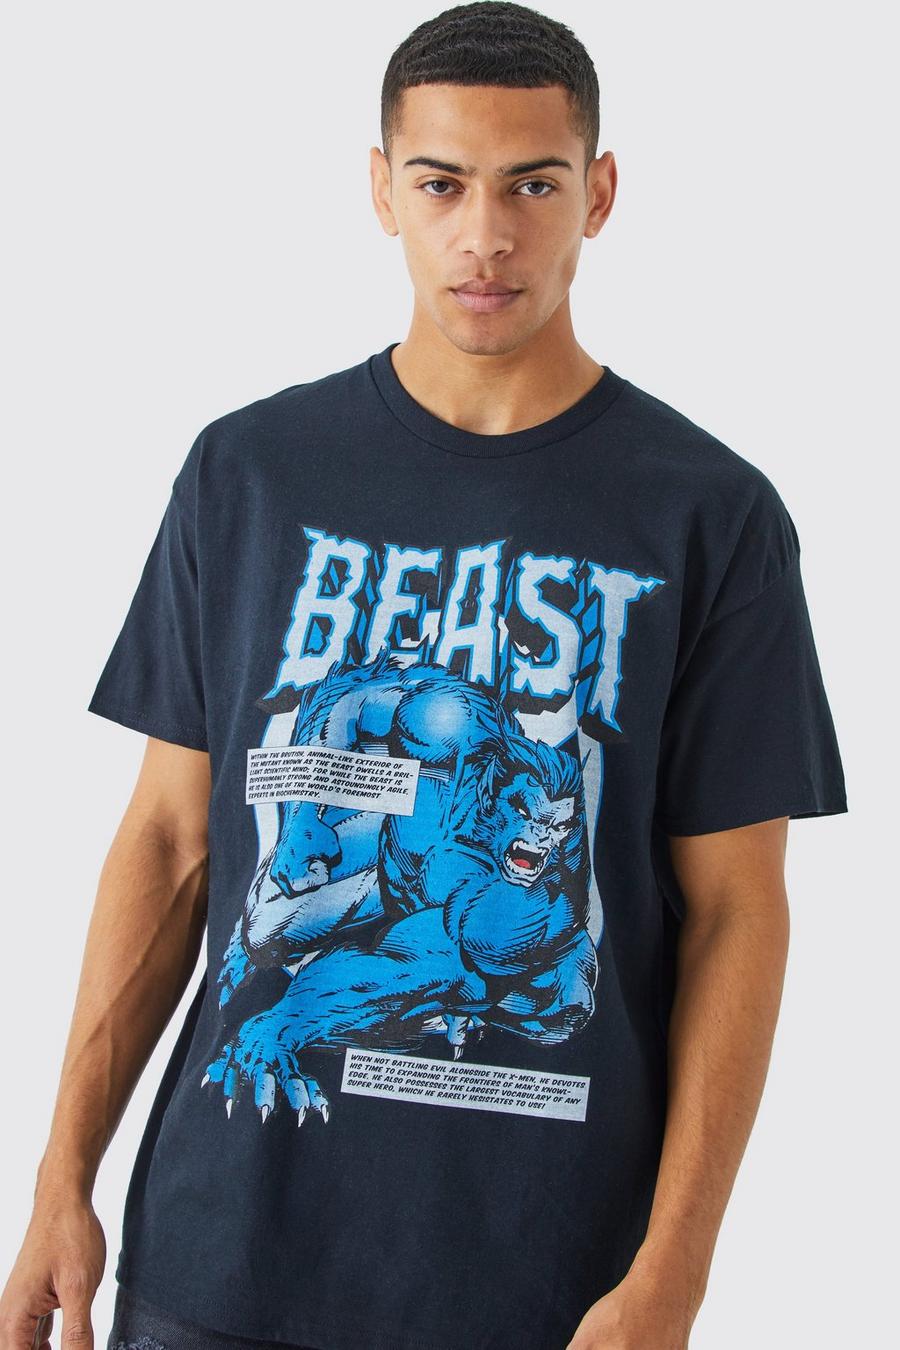 T-shirt oversize ufficiale X Men Beast, Black